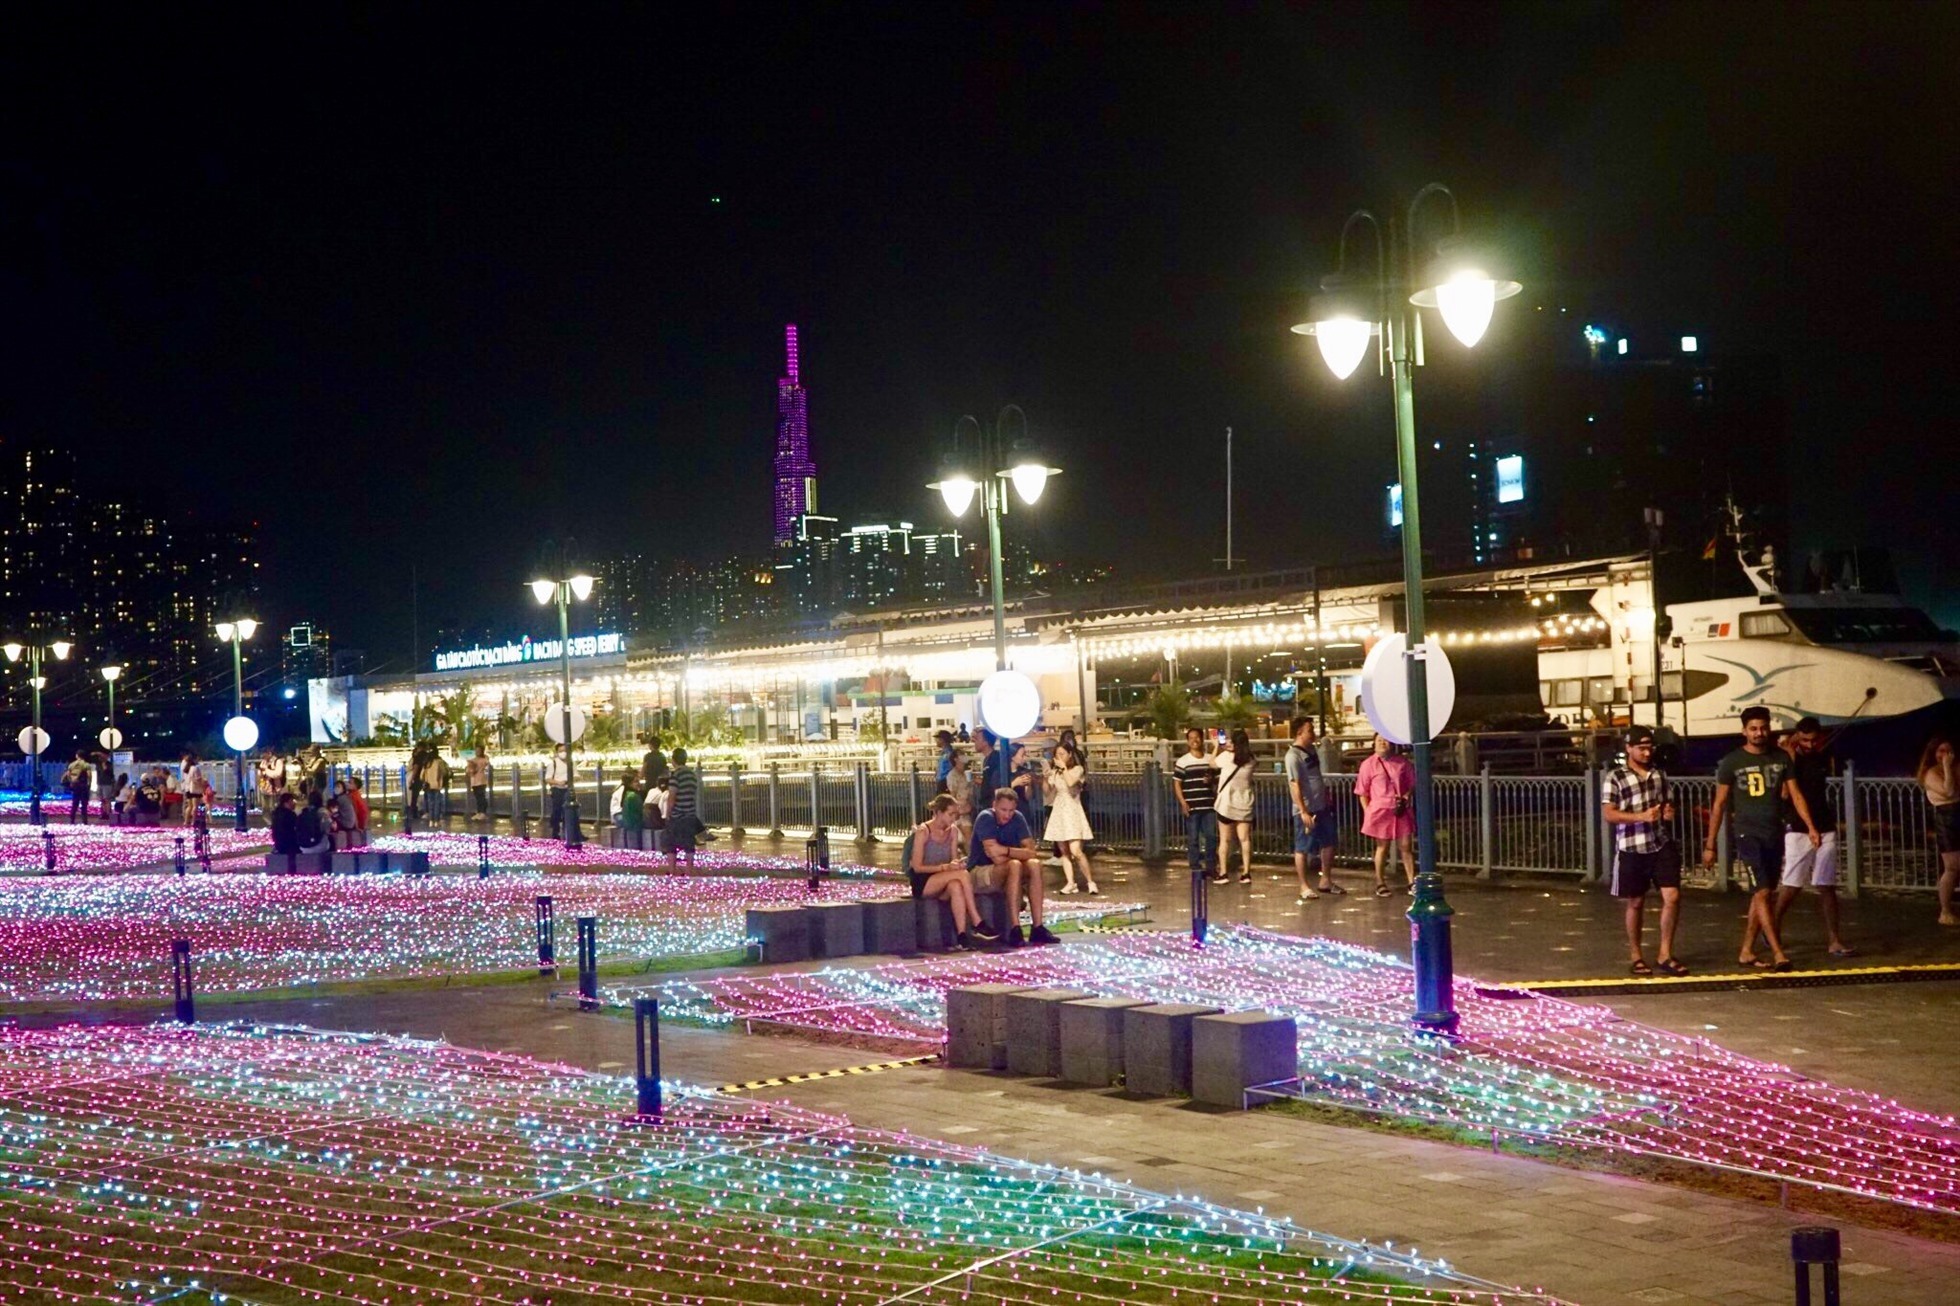 Tối ngày 15.3, UBND TPHCM phối hợp với BTC phía Nhật Bản tổ chức Hoạt động trang trí đèn nghệ thuật ánh sáng với 500.000 đèn LED tại Công viên bến Bạch Đằng, Quận 1, TPHCM. Đây là một trong số các hoạt động chào mừng kỷ niệm 50 năm quan hệ ngoại giao Việt Nam – Nhật Bản trong khuôn khổ Lễ hội Việt Nam – Nhật Bản lần thứ 8. Lễ hội ánh sáng được diễn ra từ ngày 15.3 (Thứ 4) đến 16.4 (Chủ Nhật).